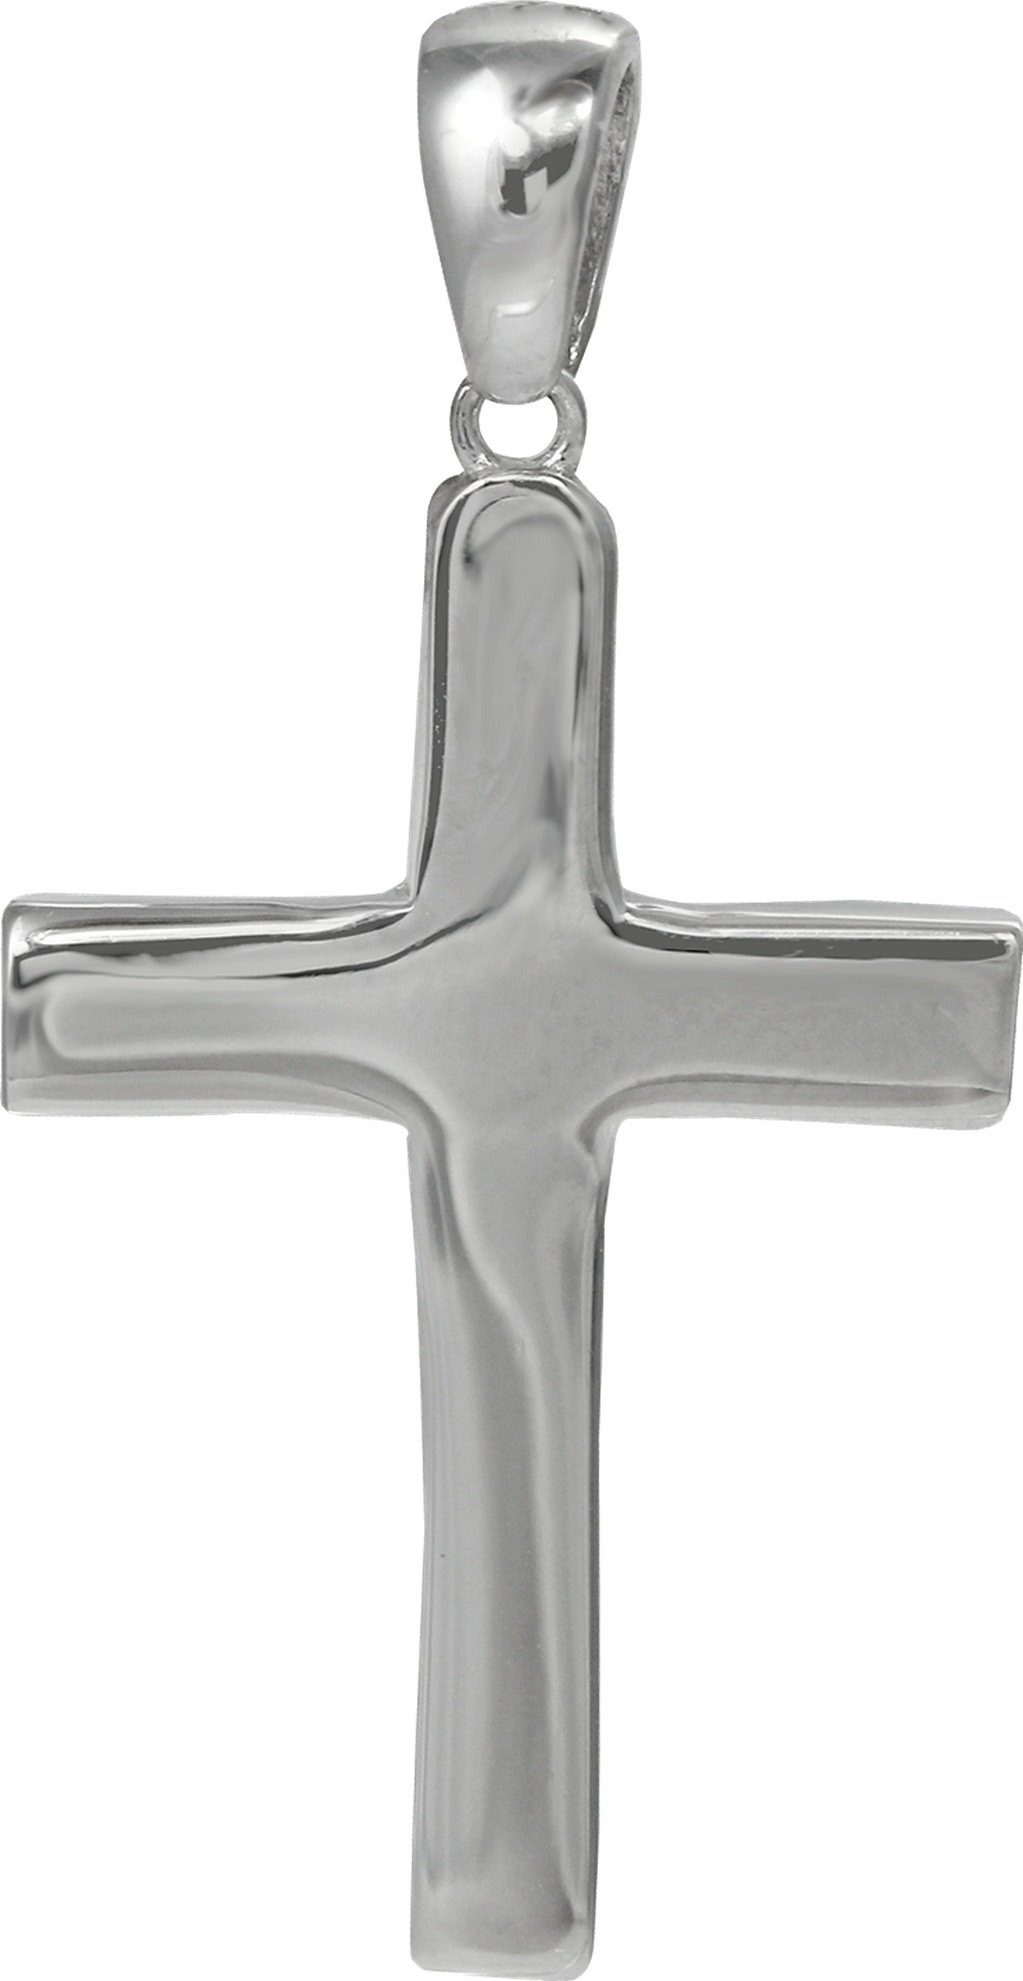 SilberDream Kettenanhänger SilberDream Ketten Anhänger -Kreuz-, Großes Kreuzanhänger 925 Sterling Silber, silber